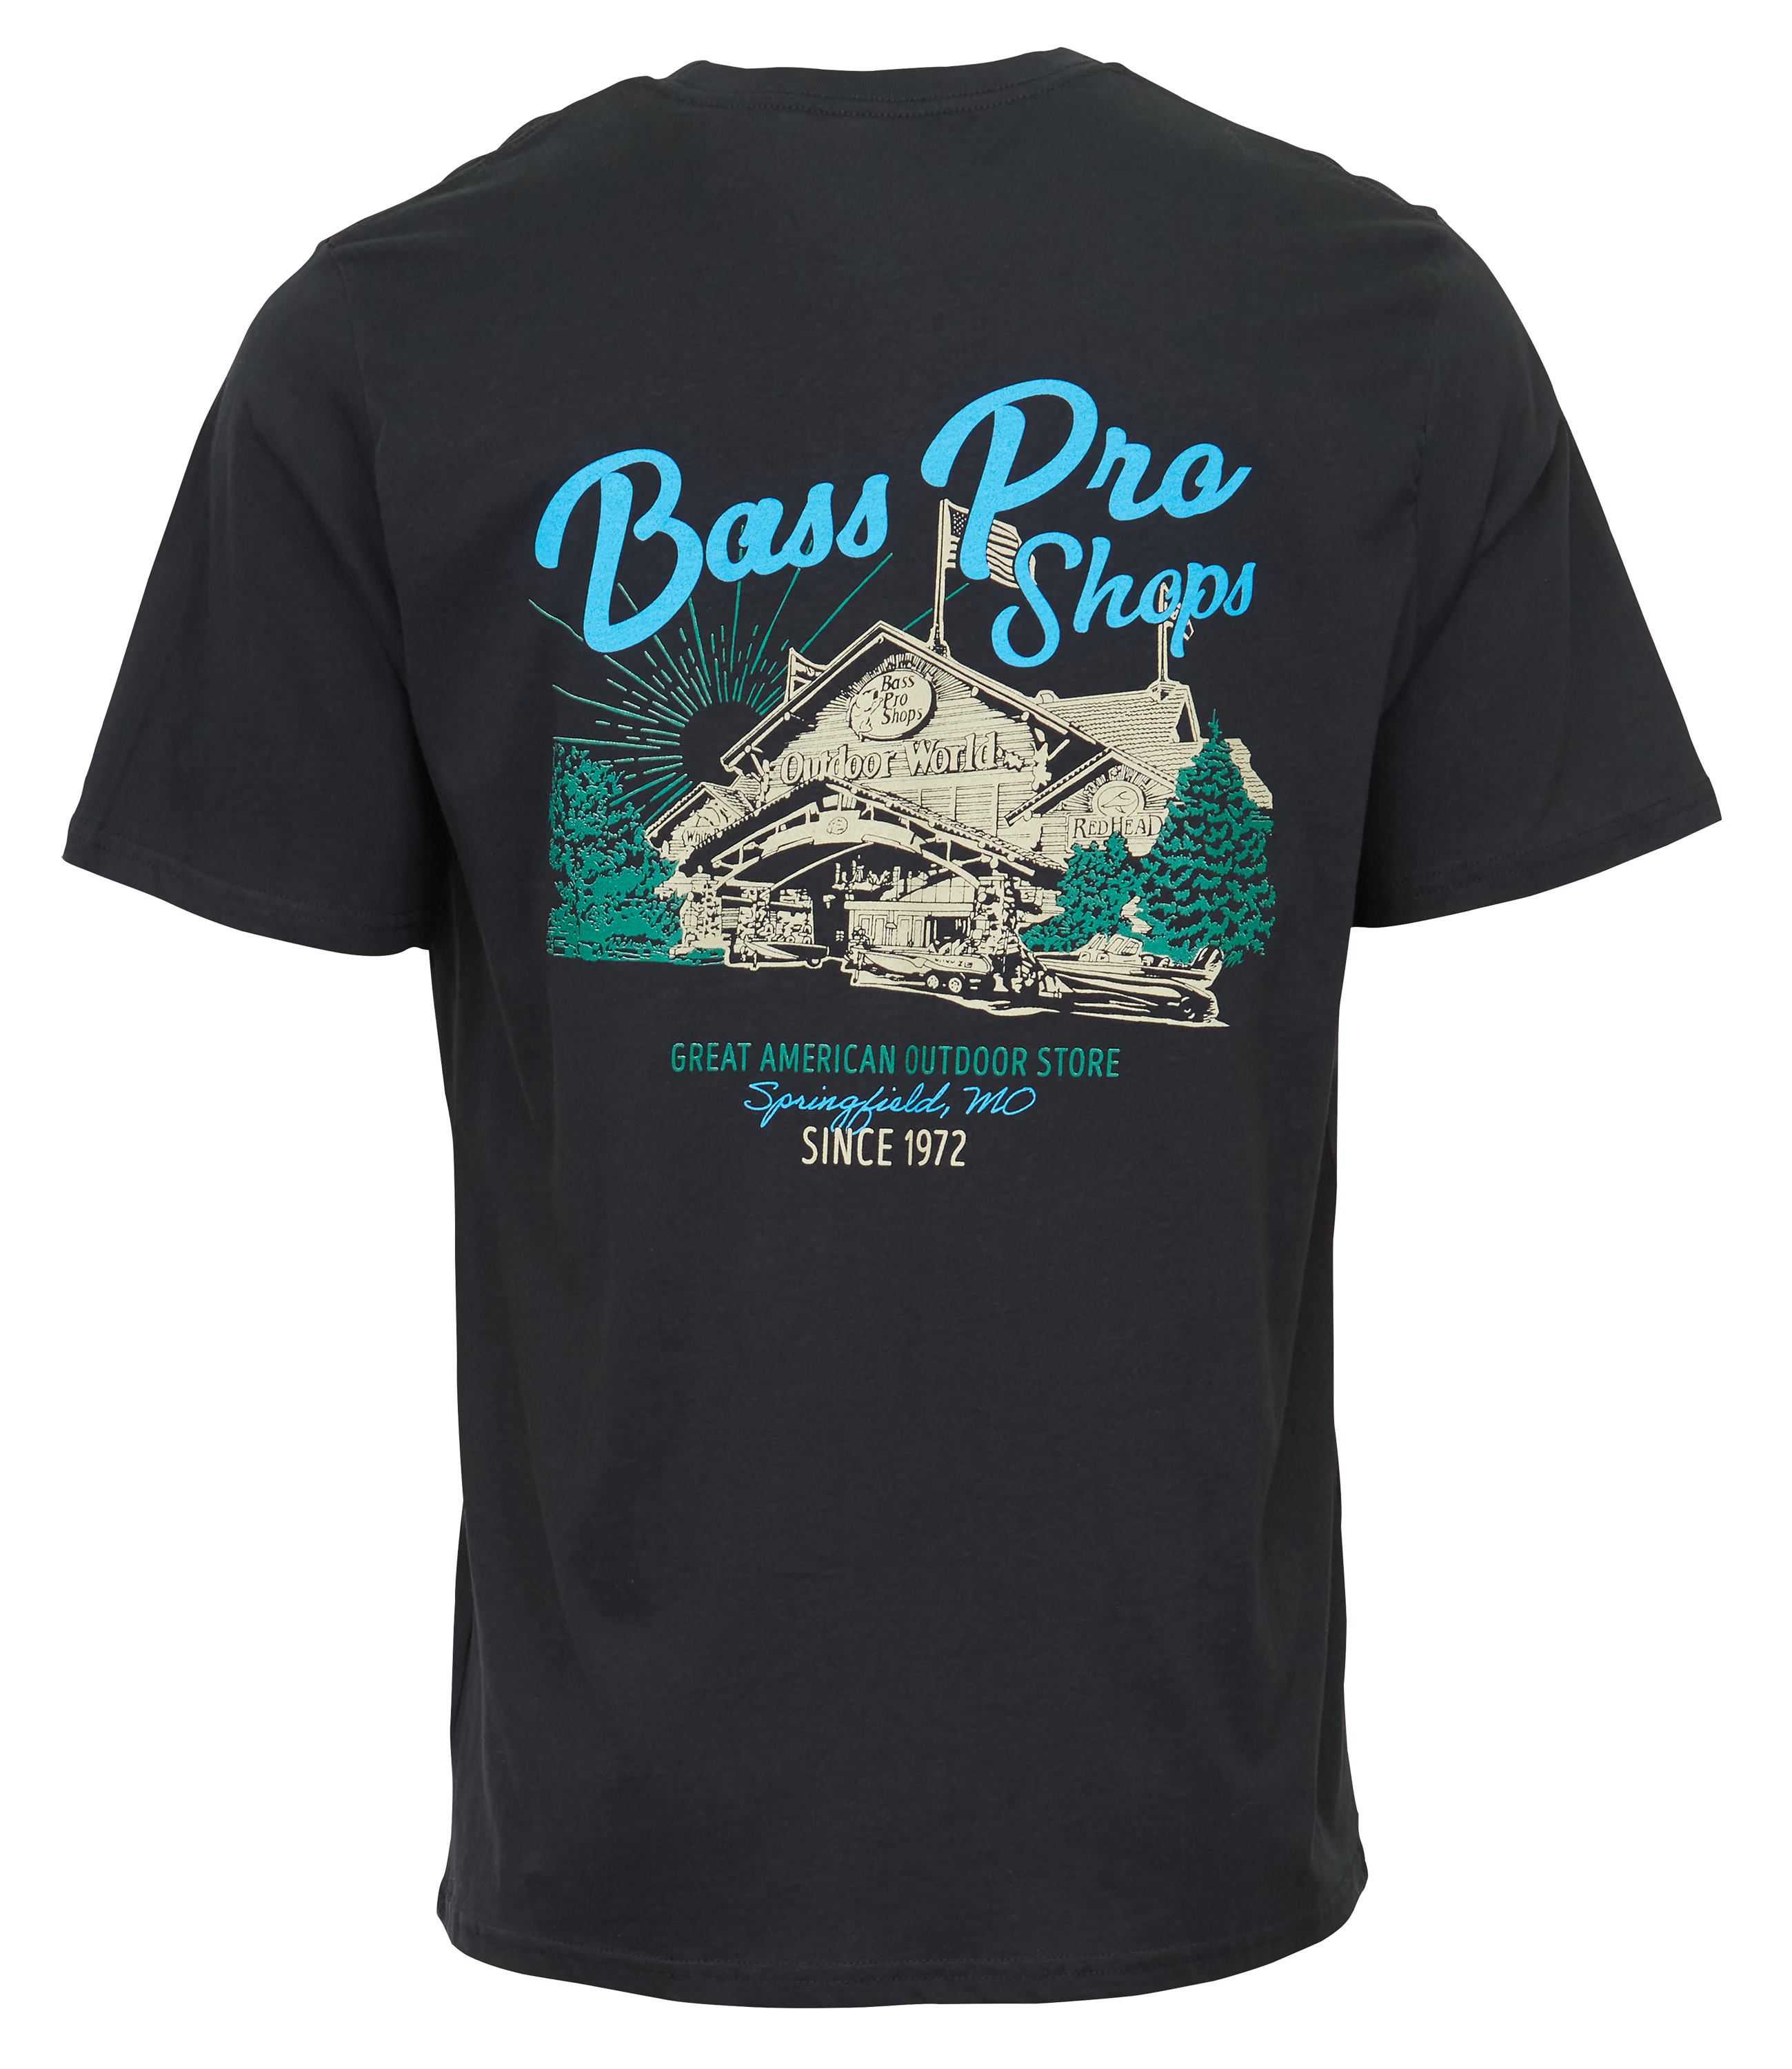 Bass Pro Shops scenic Short-Sleeve T-Shirt for Men - Black - S